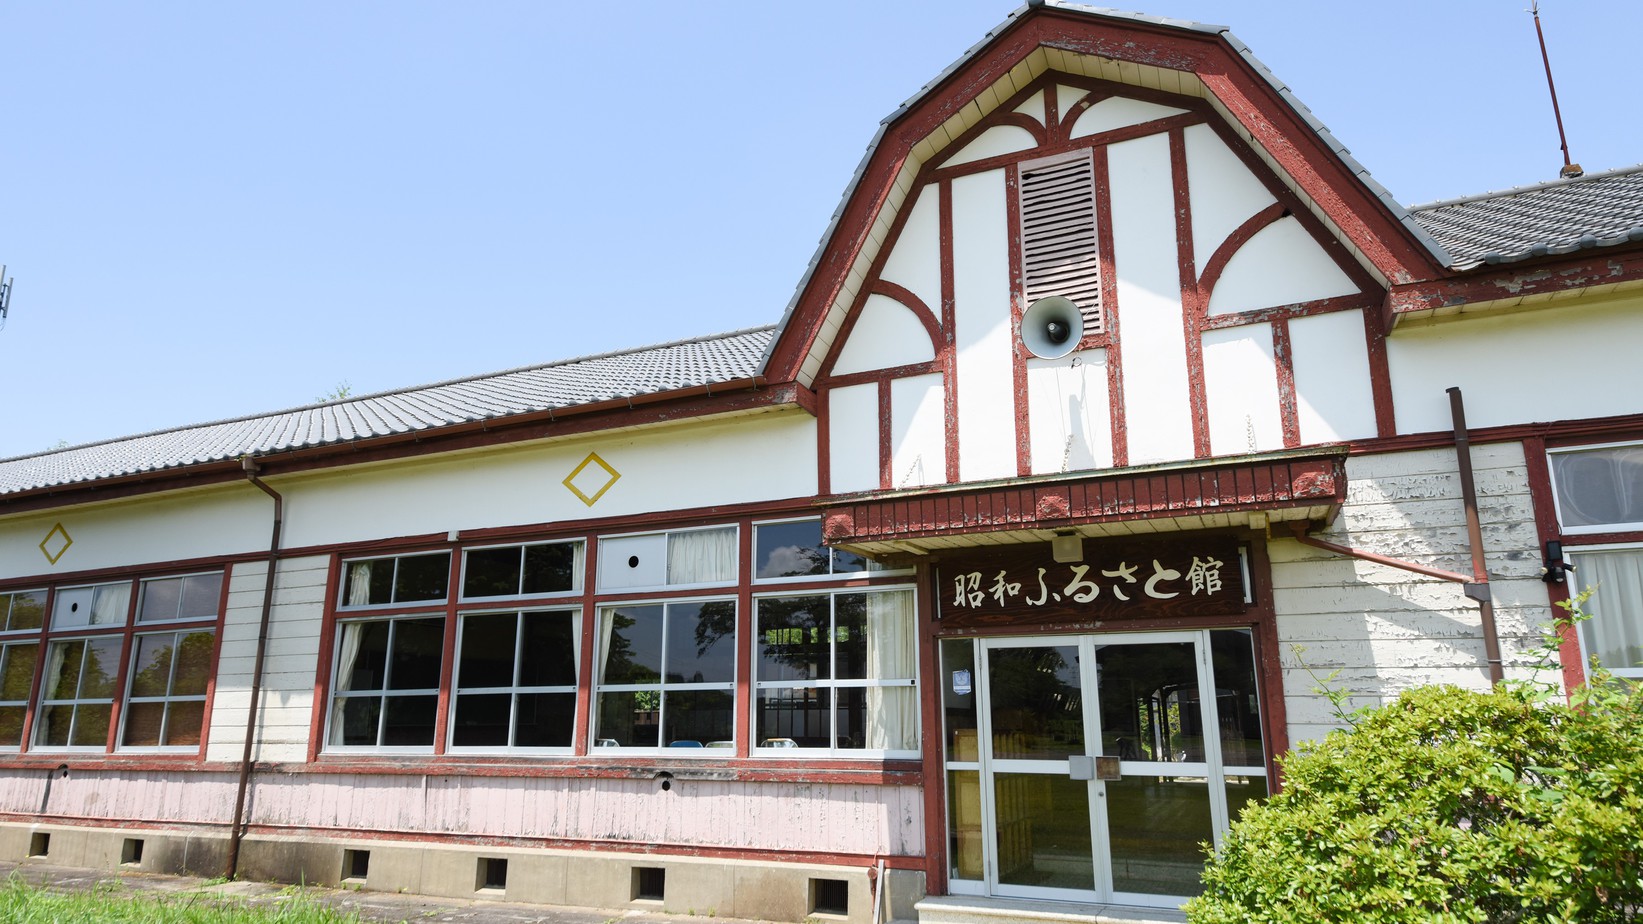 *昭和ふるさと館/旧学校の校舎を改装した建物、古きよき日本の学び舎がそのままに